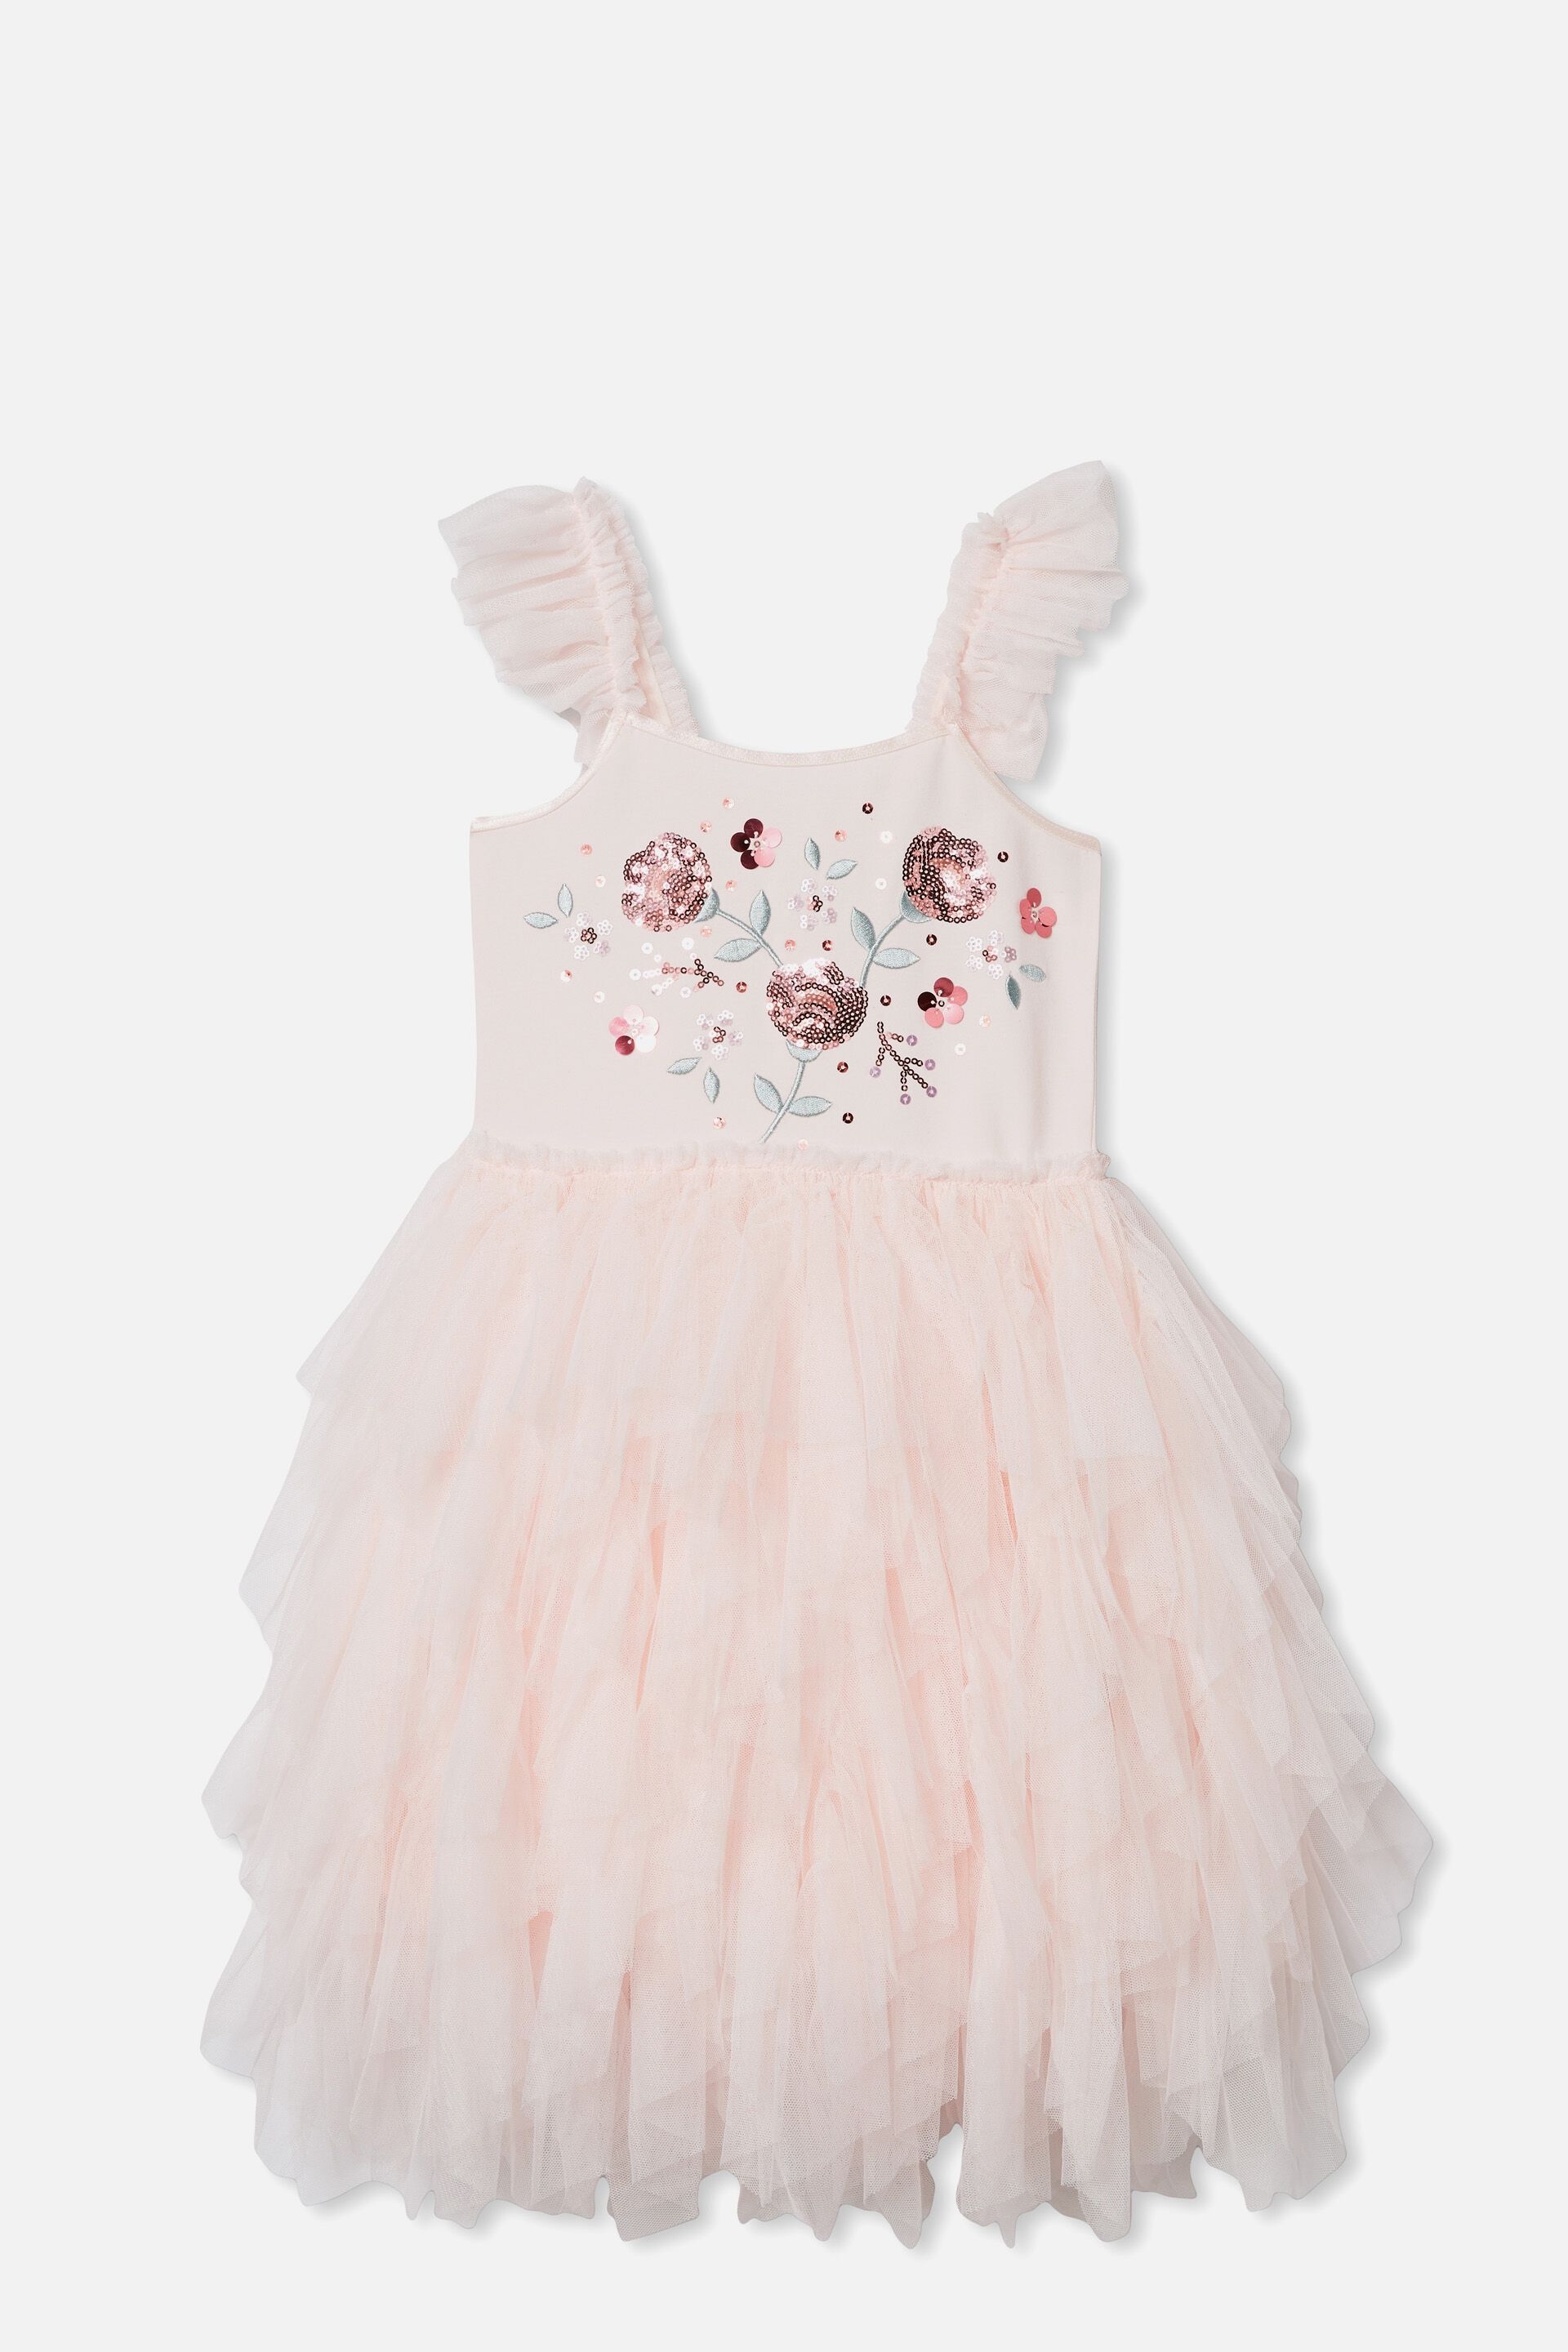 cotton on kids unicorn dress